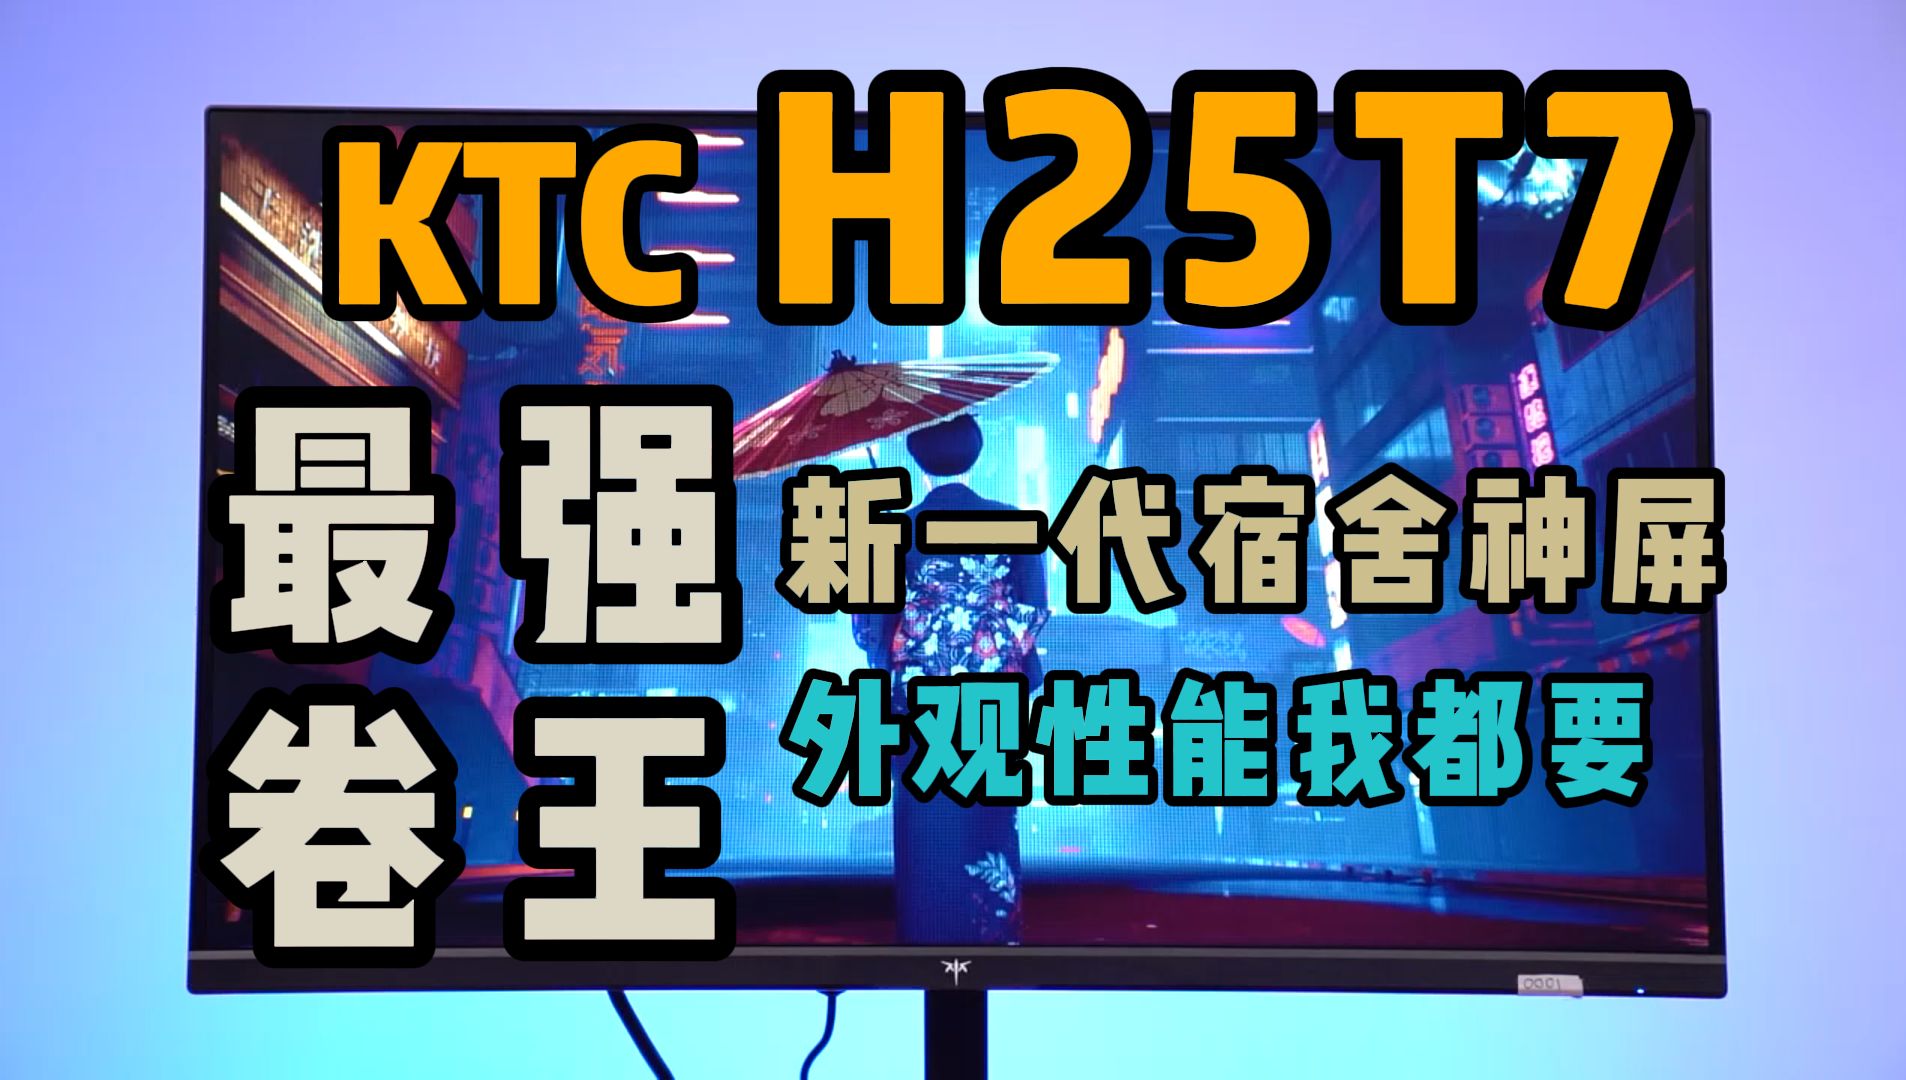 最强卷王！KTC H25T7显示器，24.5寸 1080P 180Hz的电竞新秀 新一代宿舍神屏！